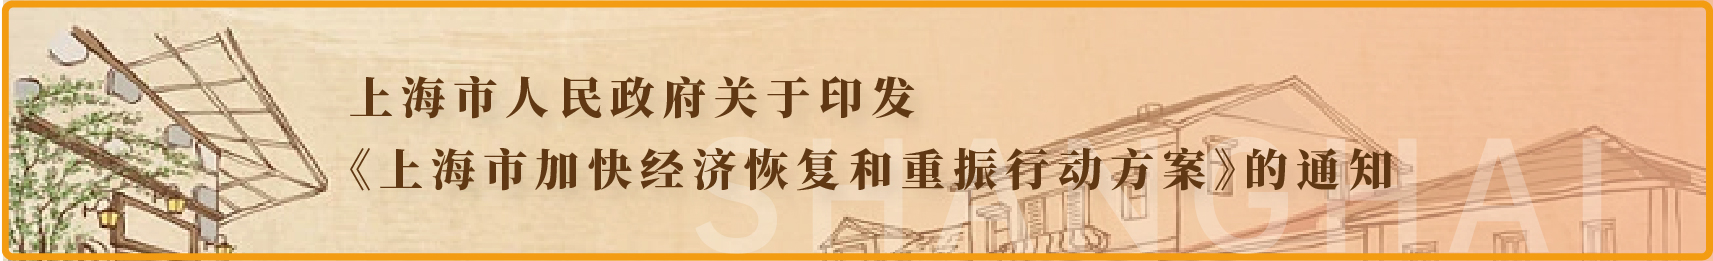 上海市人民政府关于印发《上海市加快经济恢复和重振行动方案》的通知